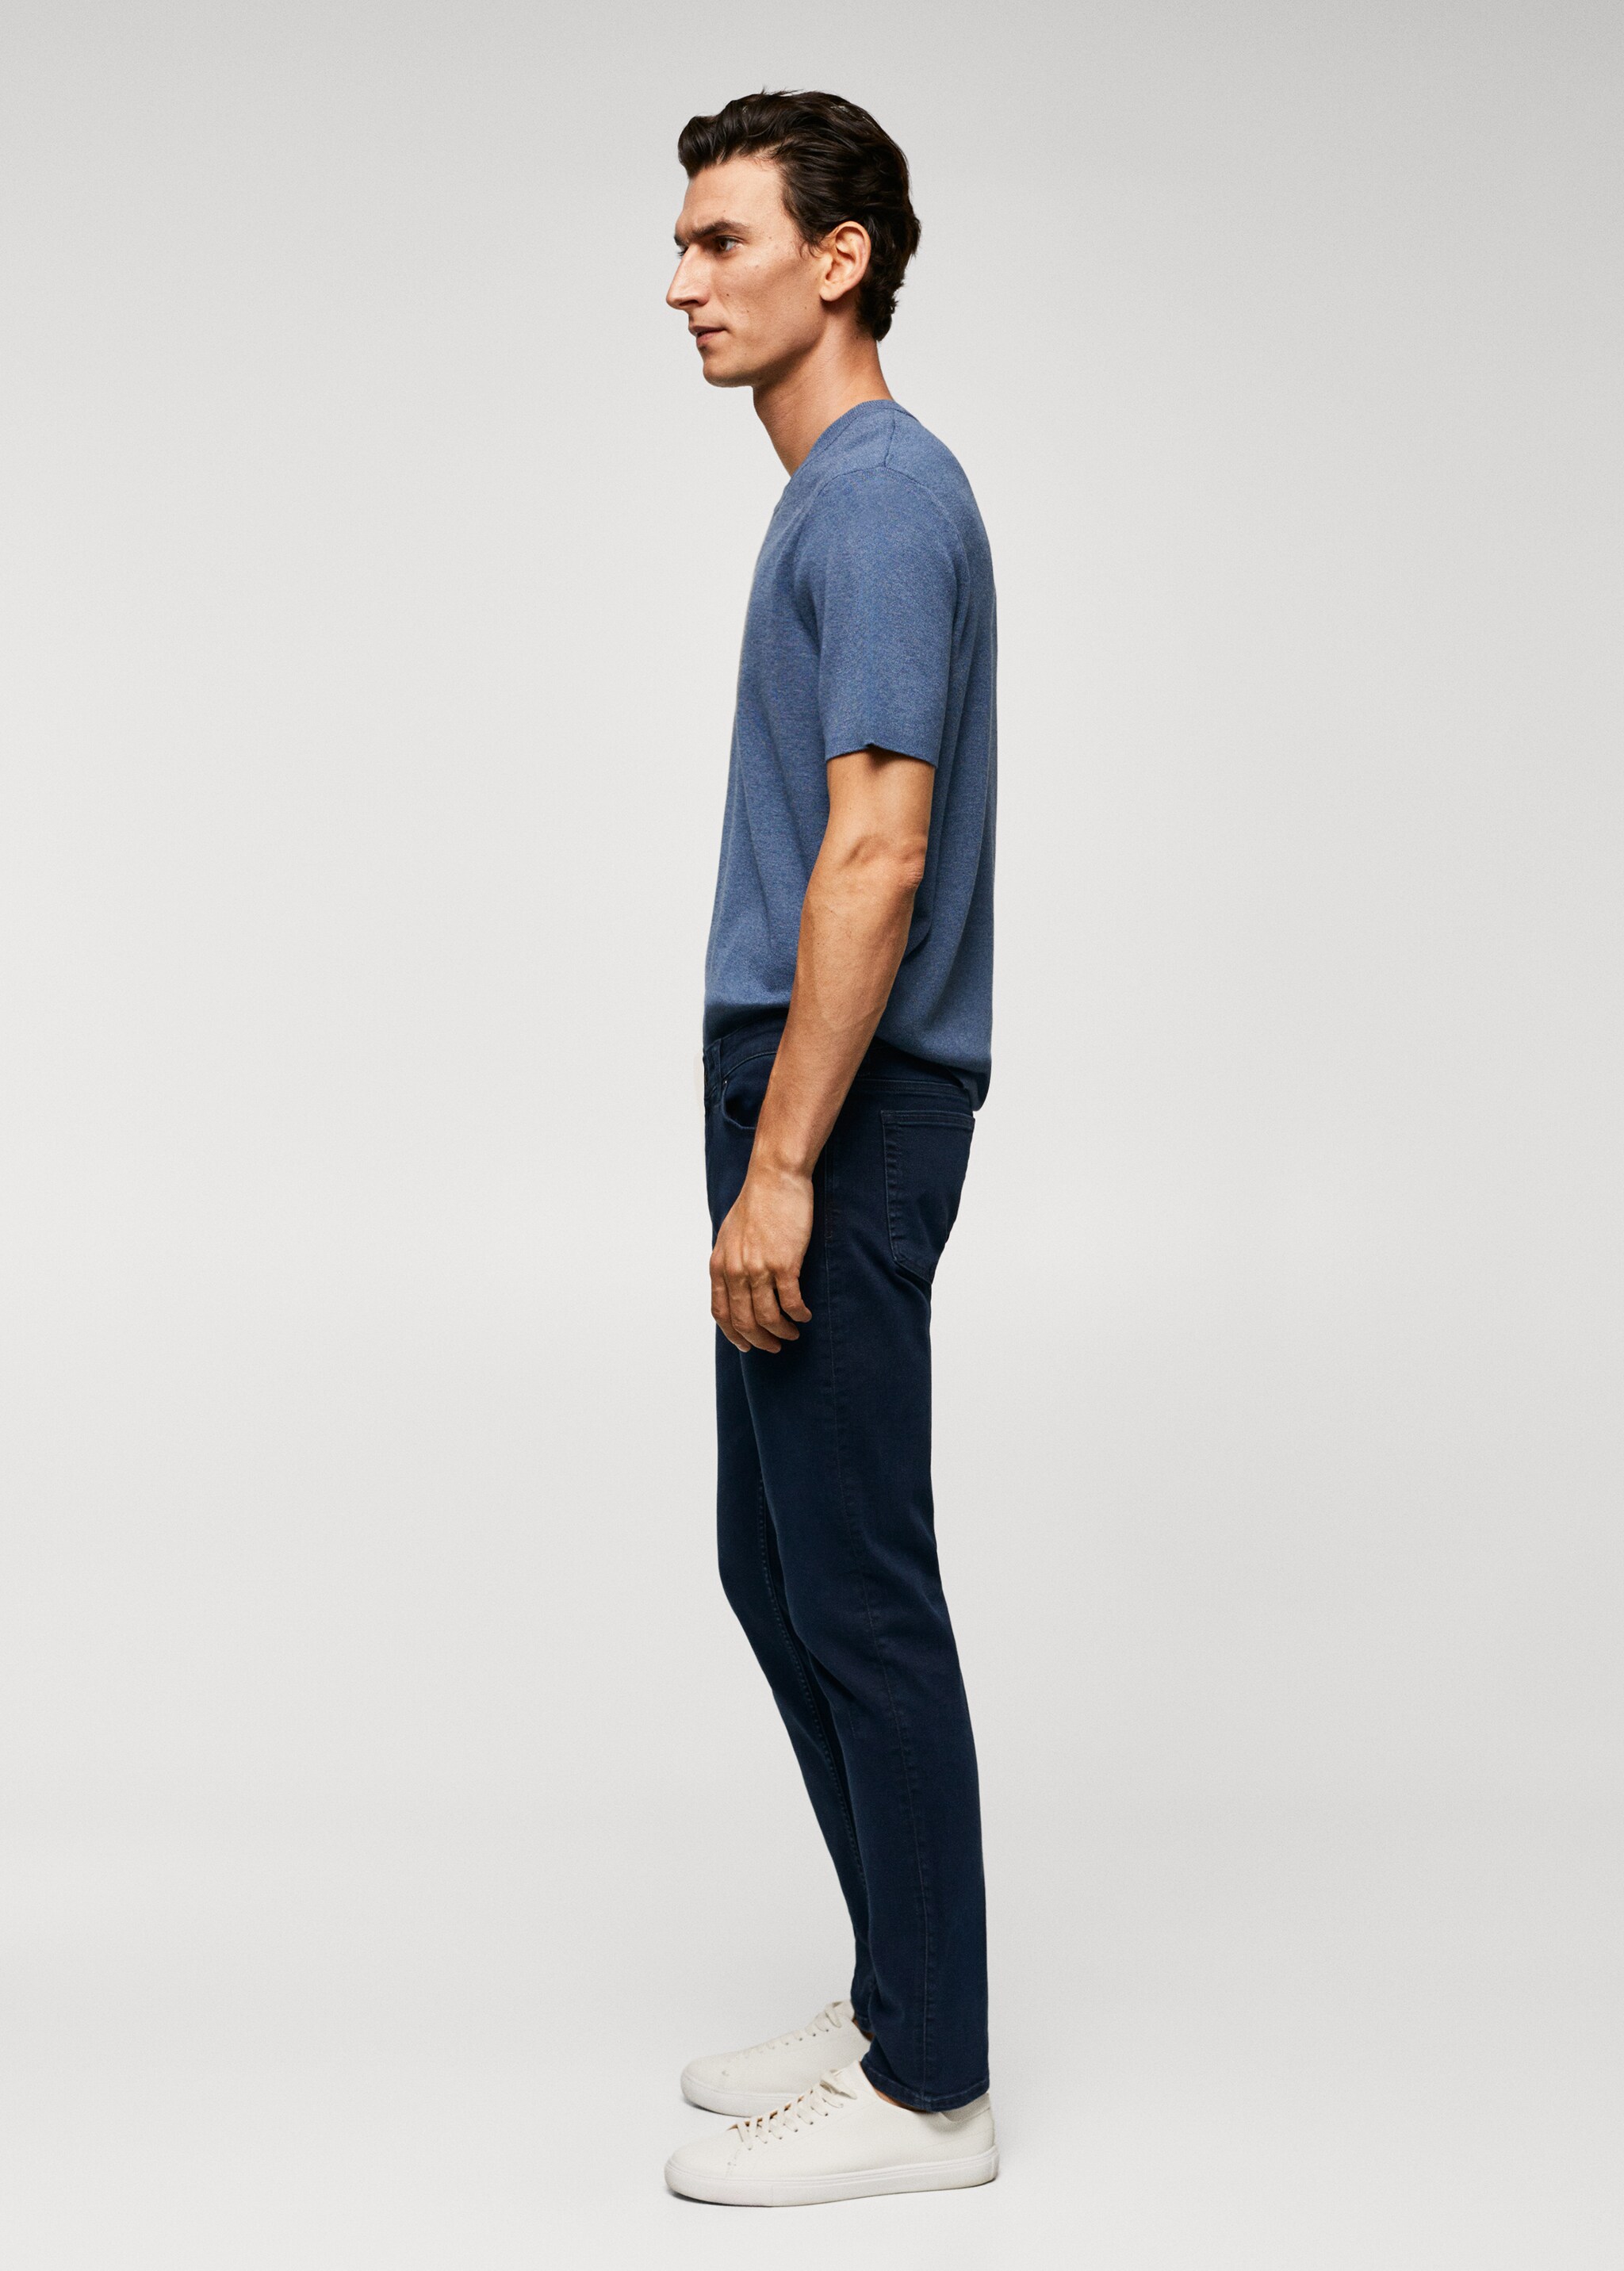 Jeans Patrick slim fit Ultra Soft Touch - Dettaglio dell'articolo 2